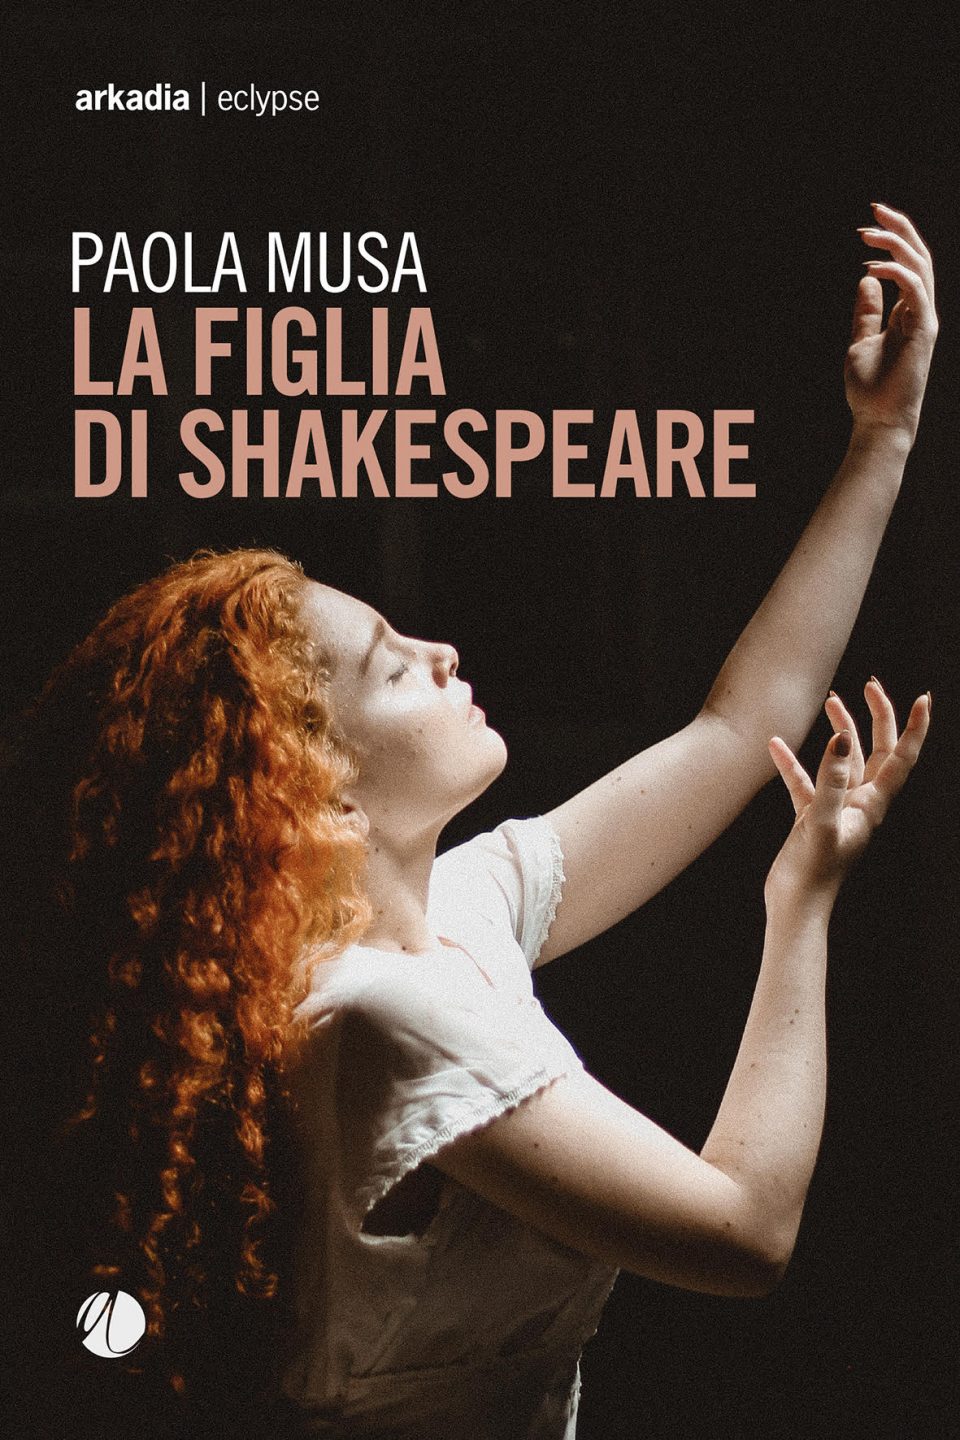 Paola Musa "La figlia di Shakespeare "